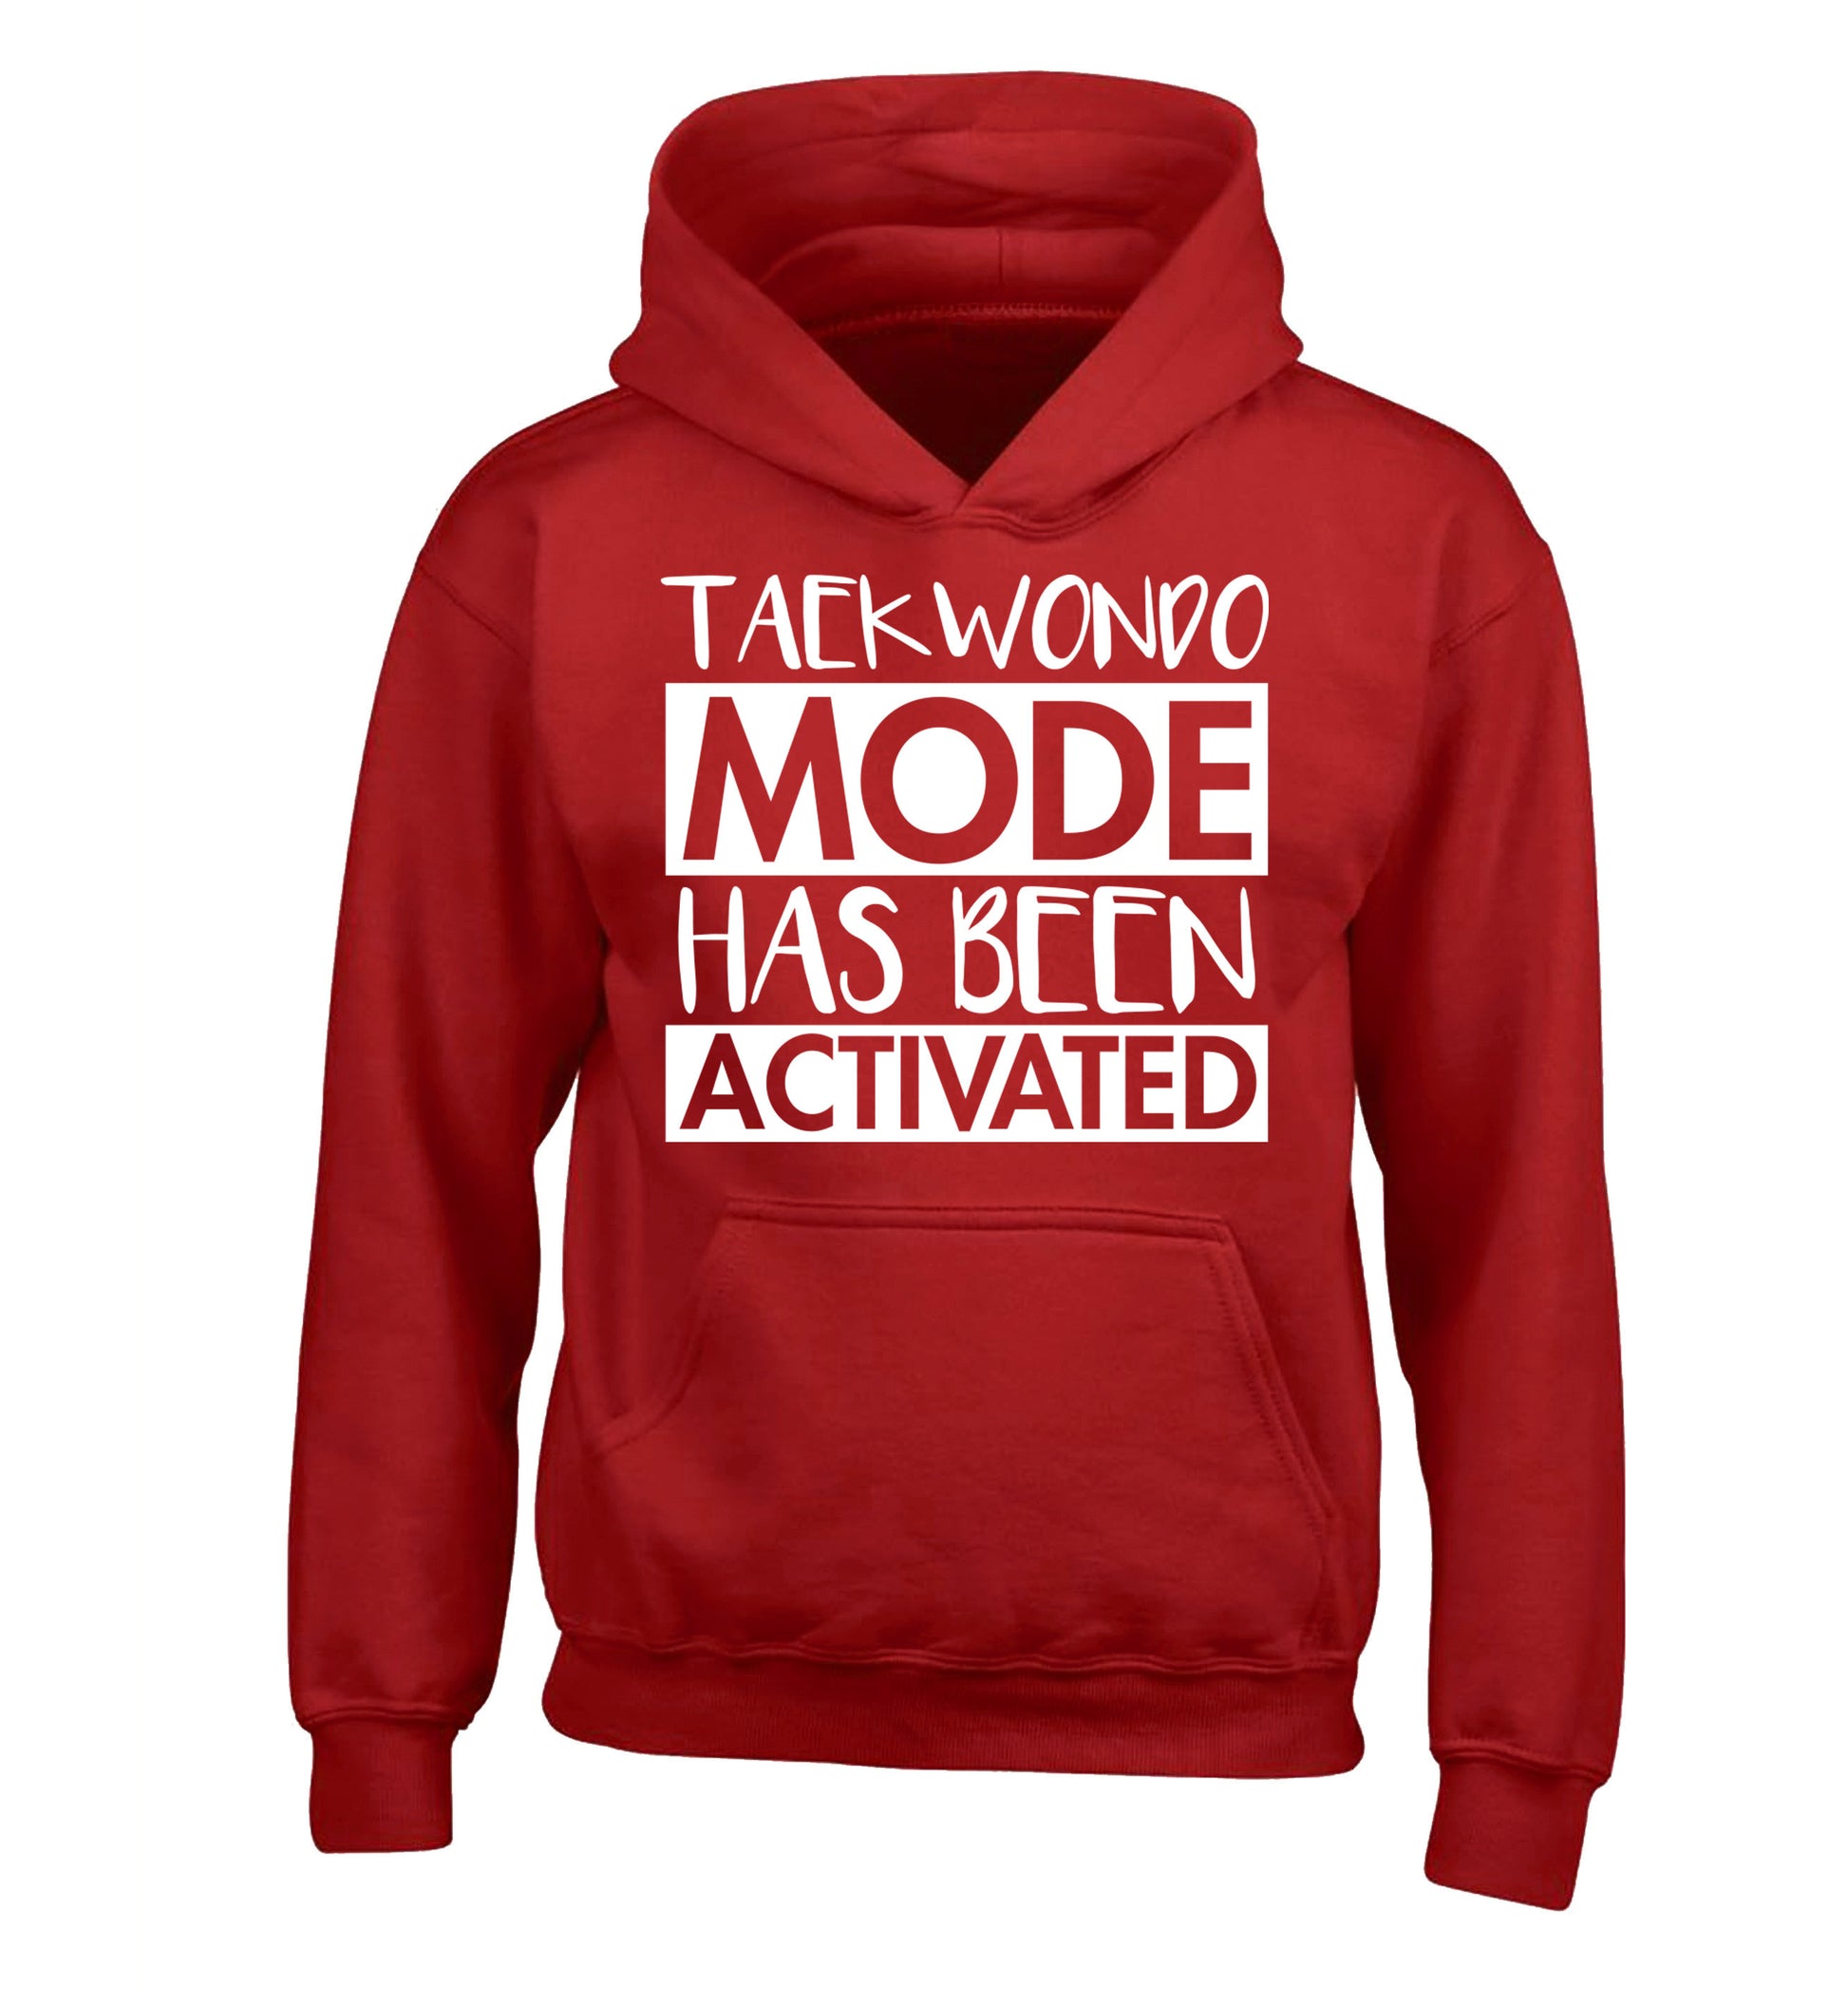 Taekwondo mode activated children's red hoodie 12-14 Years